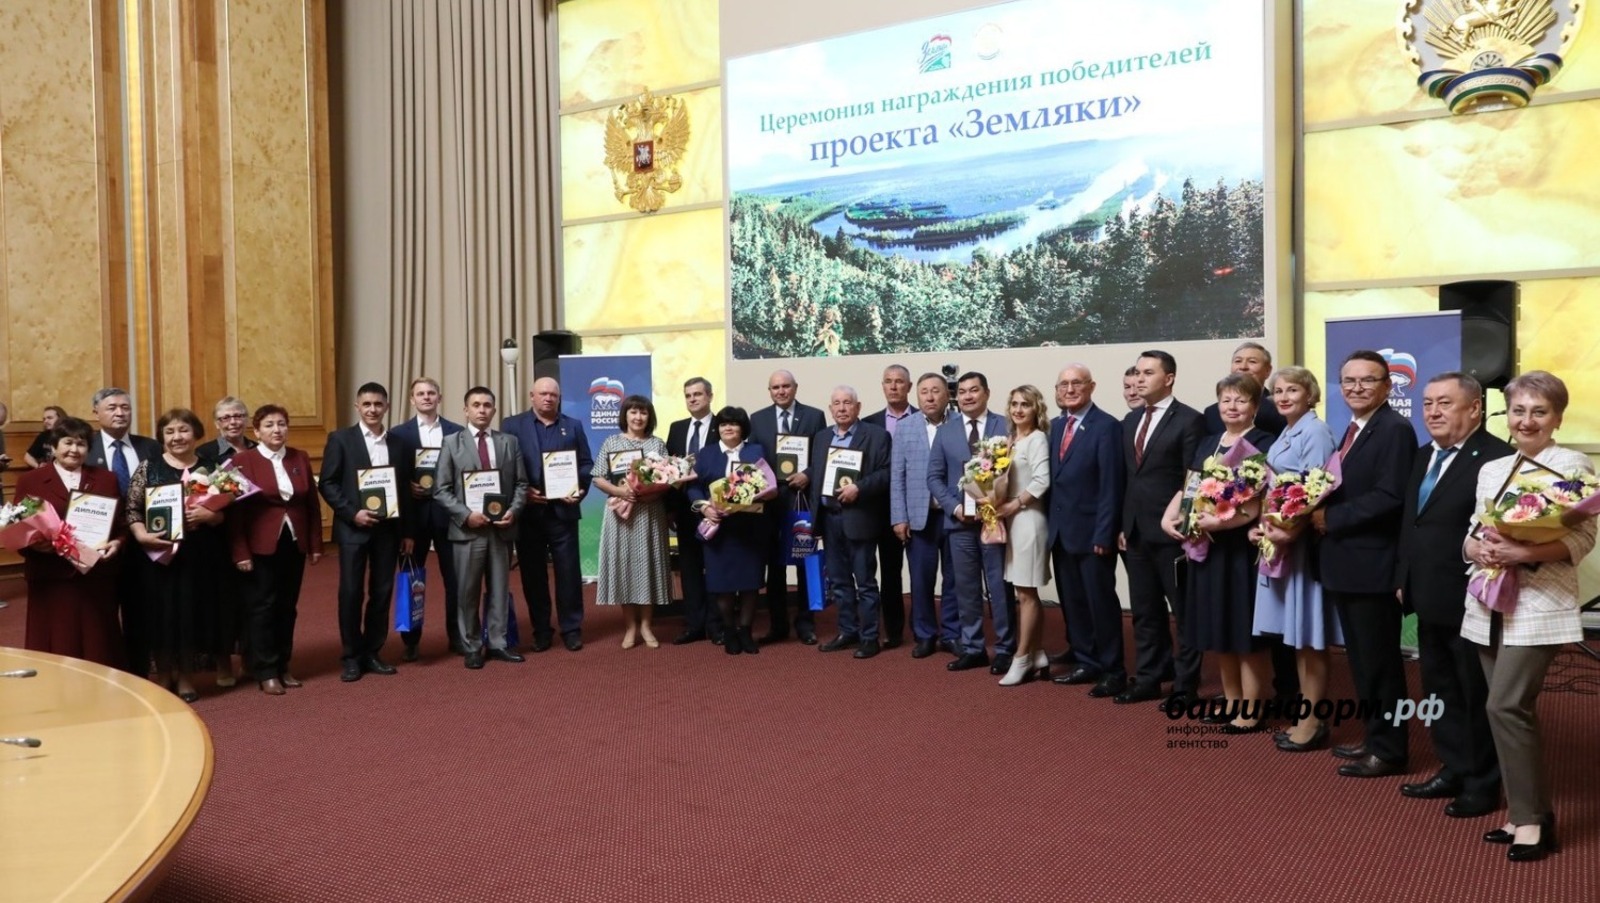 В Уфе торжественно наградили победителей проектов «Атайсал» и «Земляки»